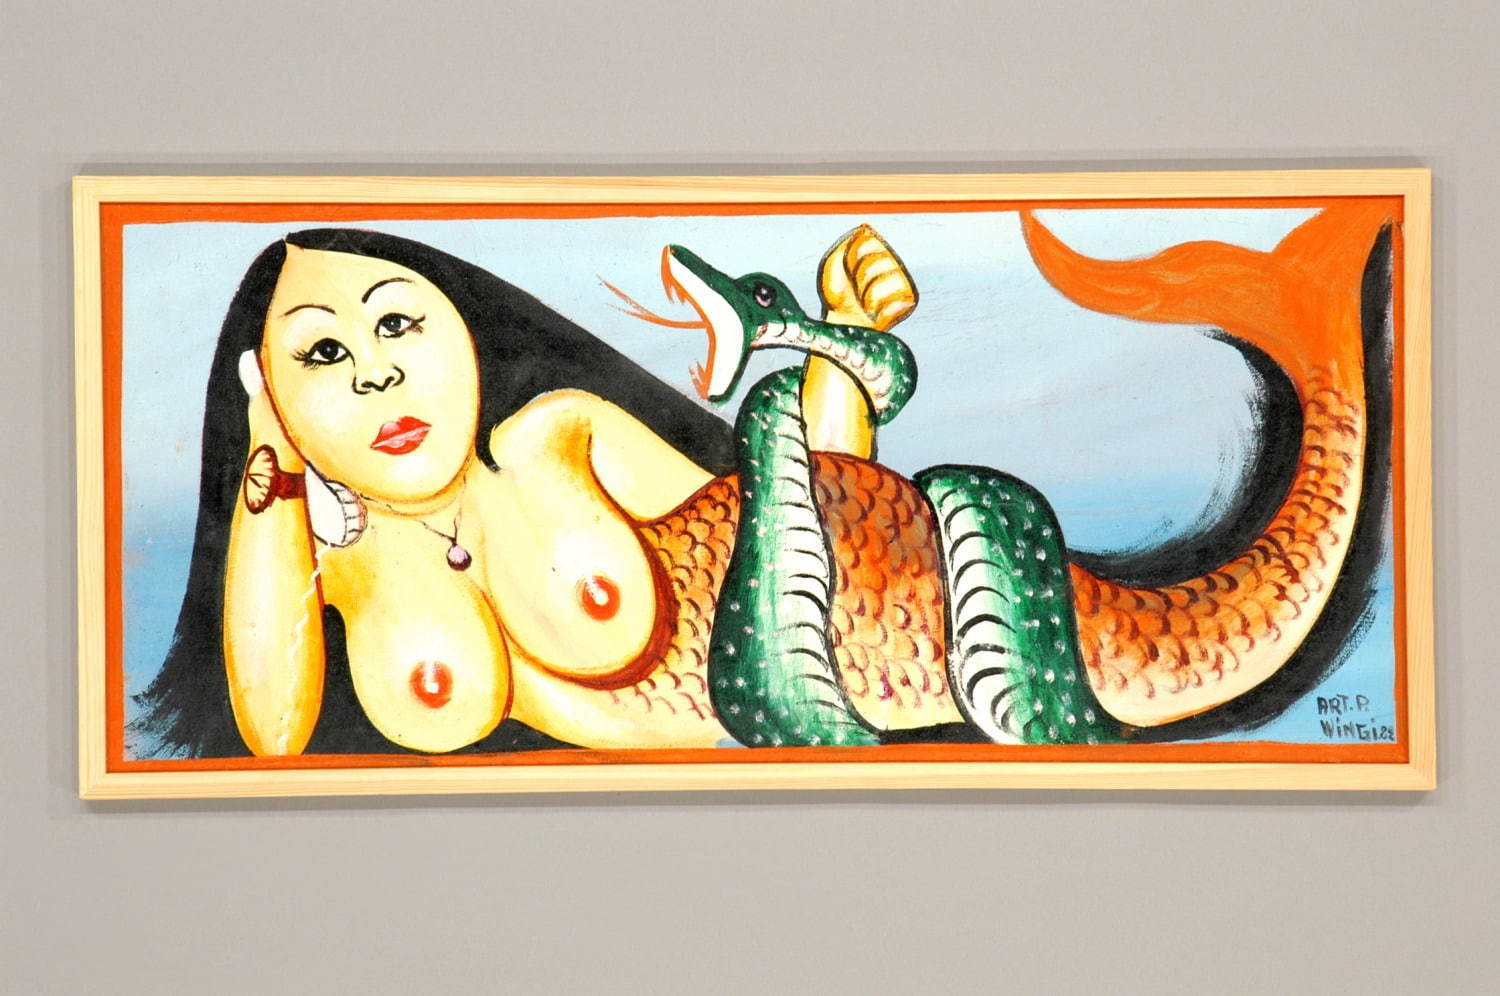 絵画「セイレーンと蛇」(コンゴ民主共和国)
国立民族学博物館蔵